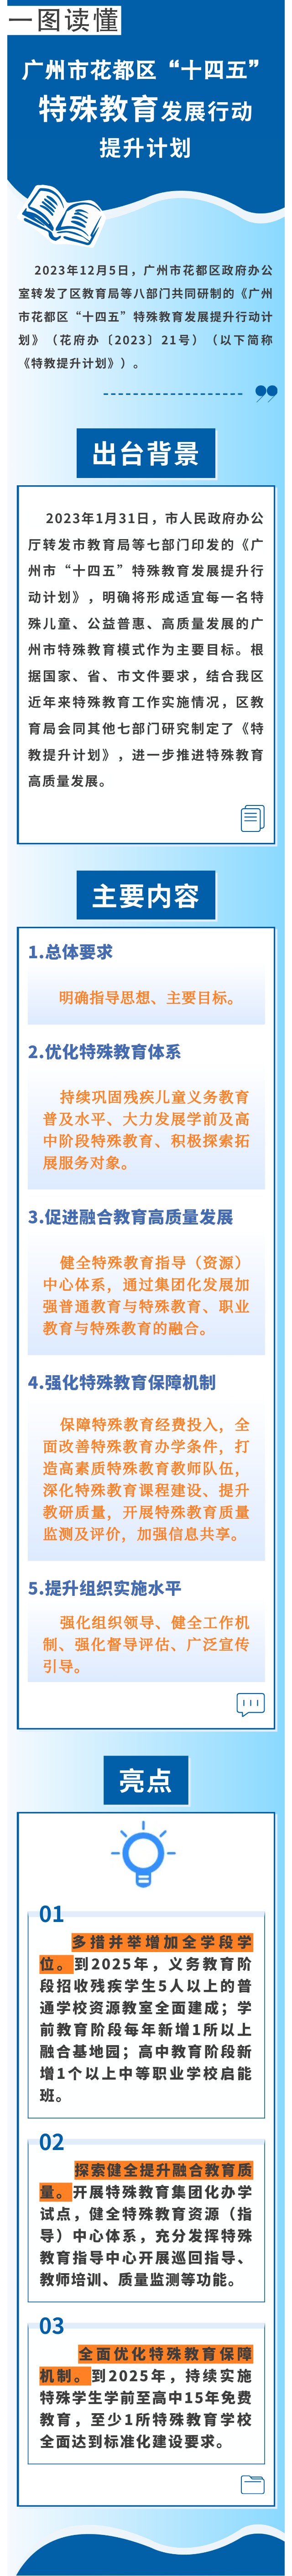 《广州市花都区“十四五”特殊教育发展提升行动计划》图文解读.jpg